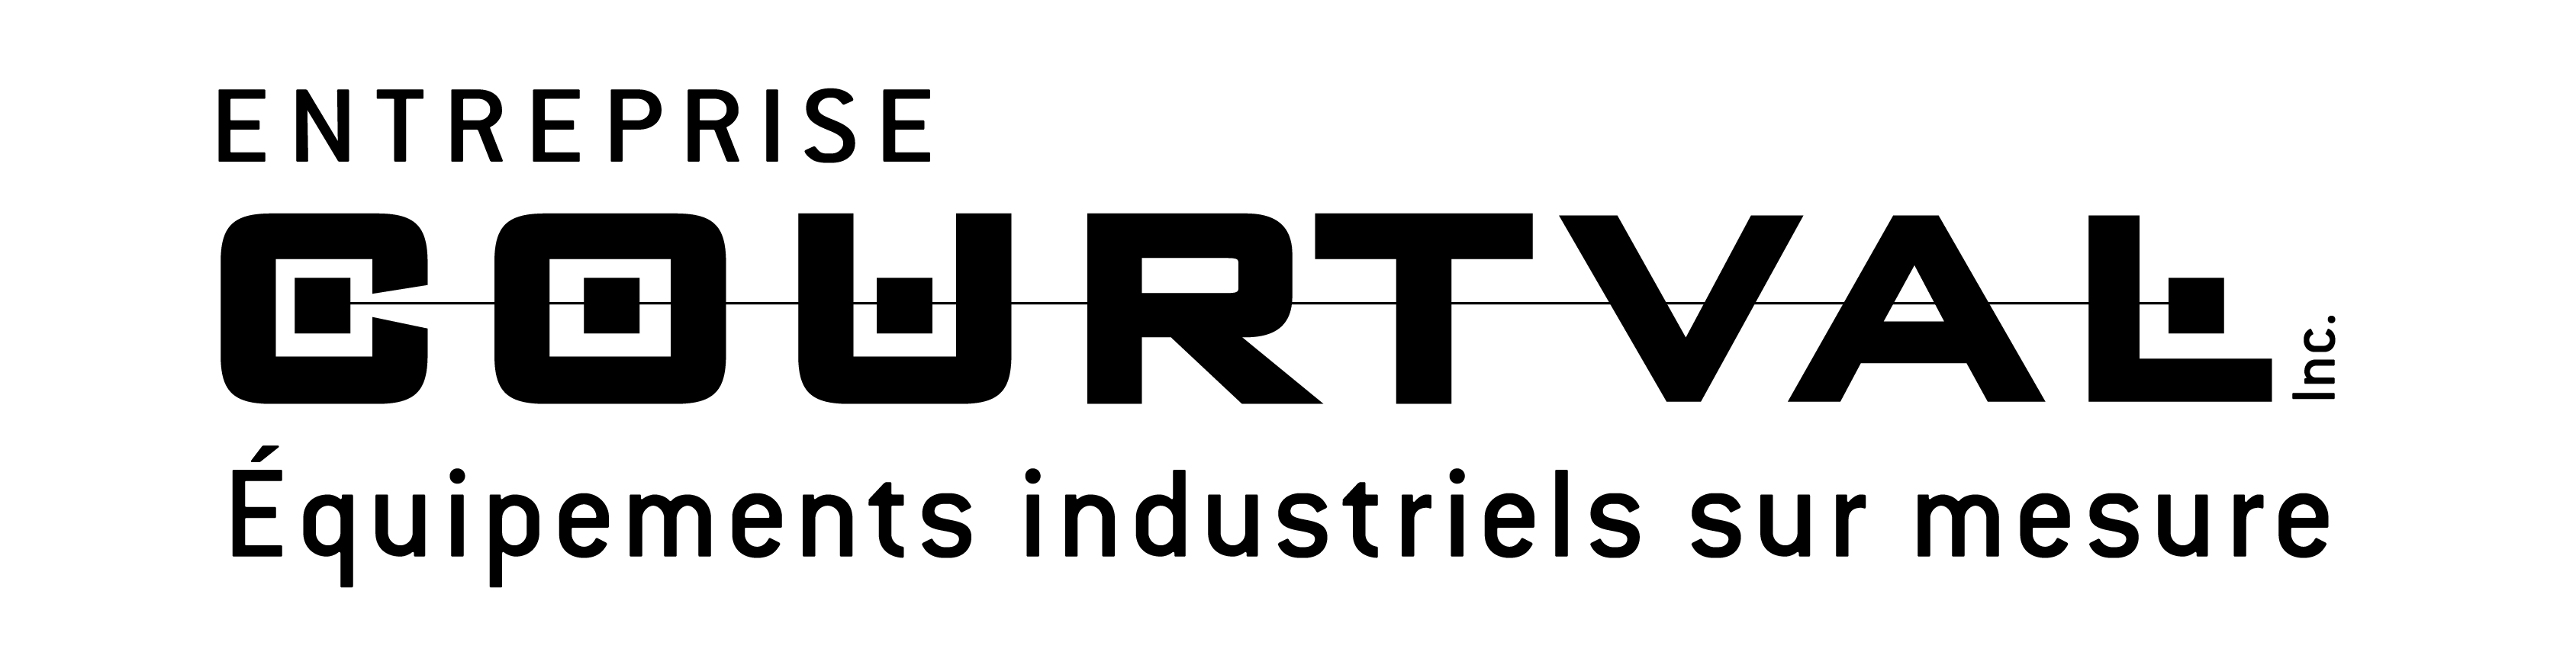 Entreprise Courtval - Logo